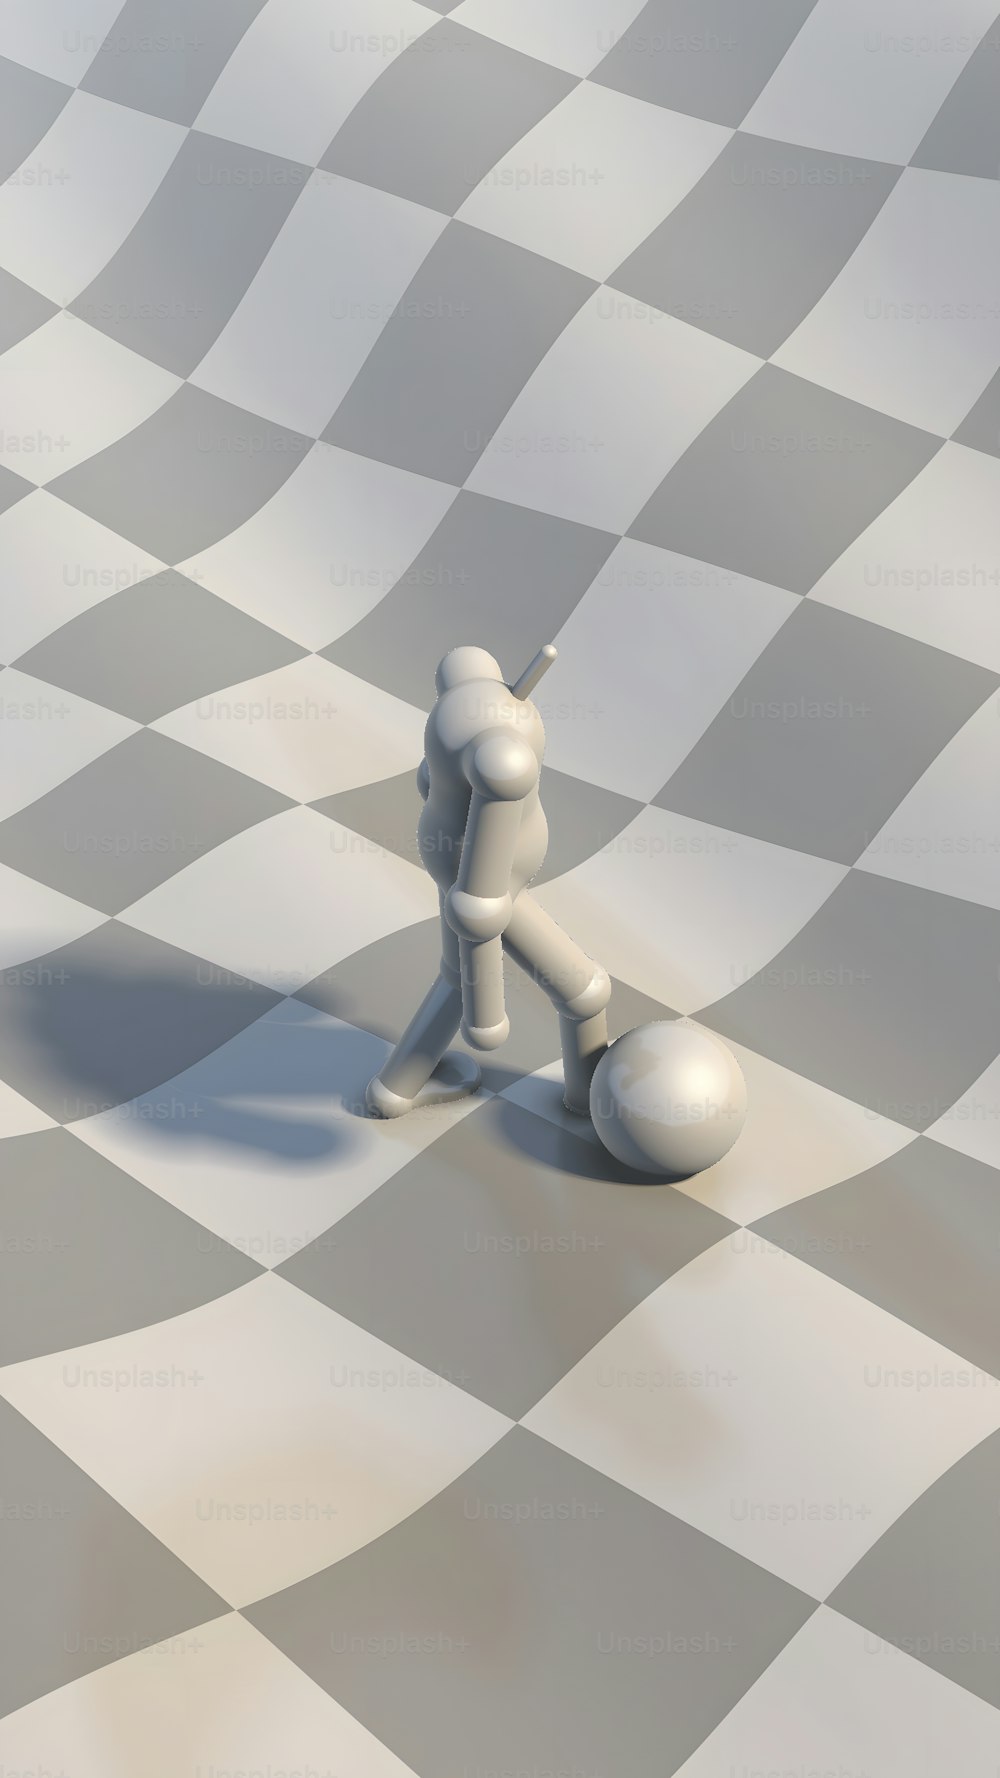 eine Person, die auf einem Schachbrett steht